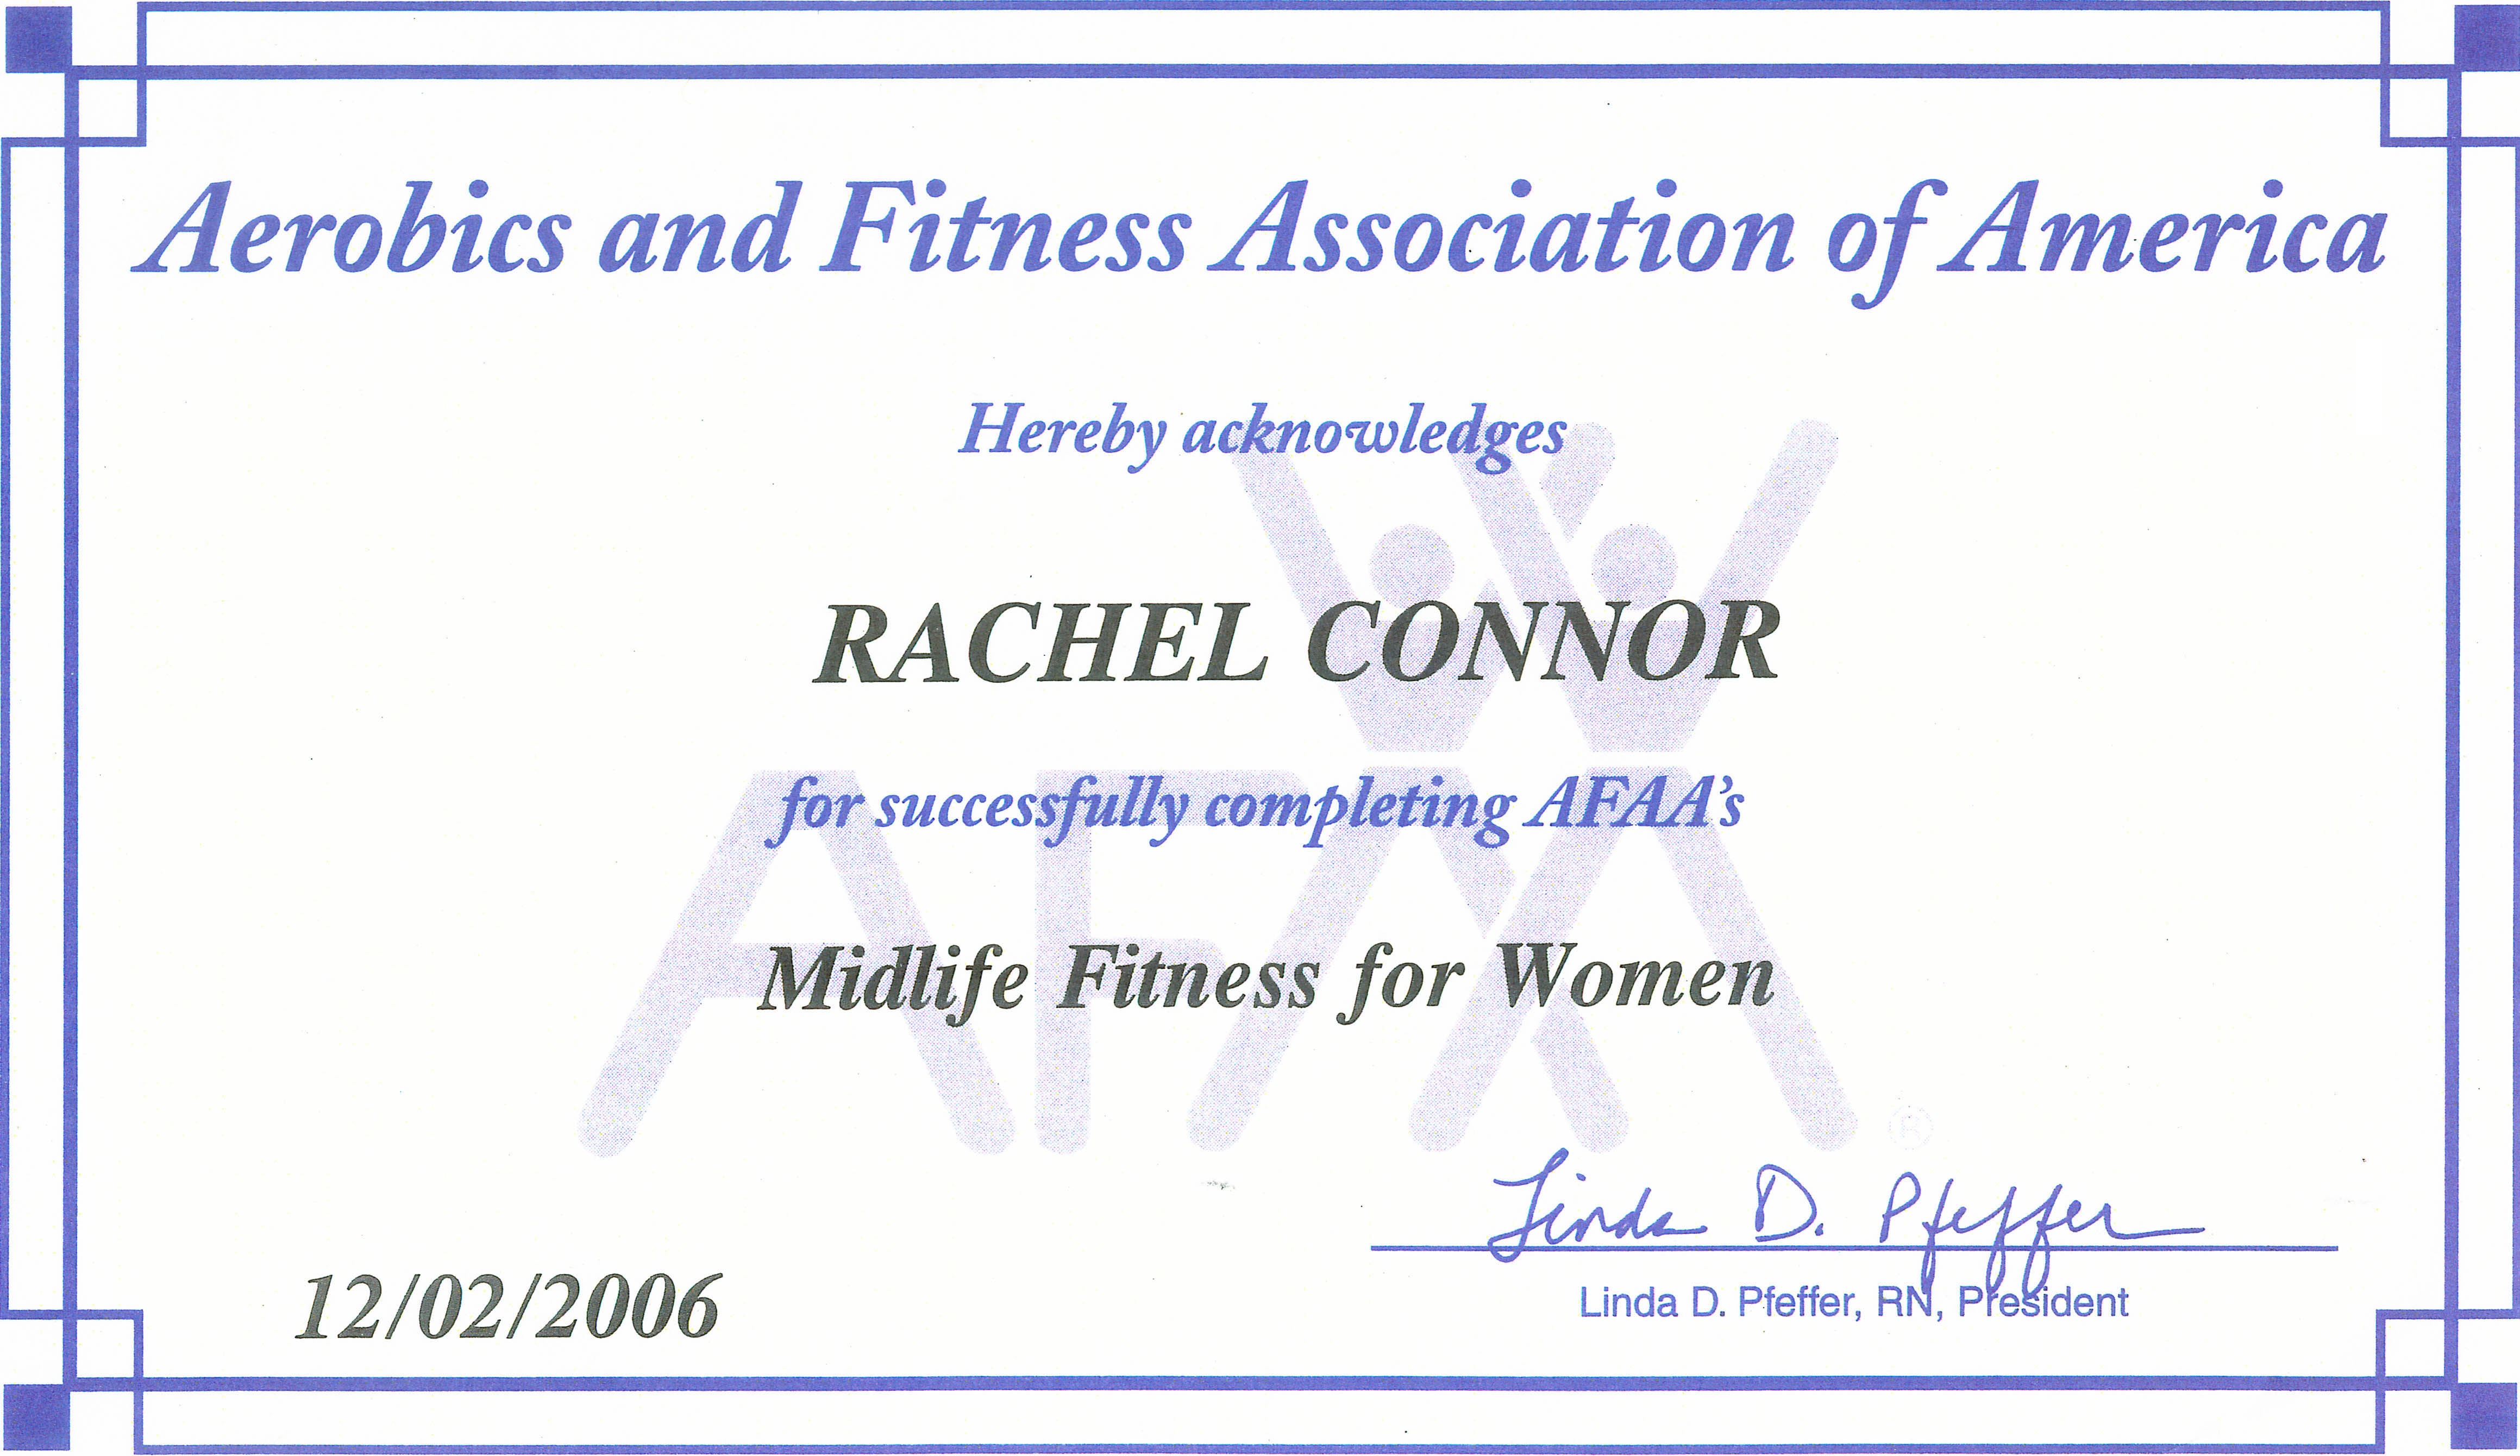 Midlife Fitness for Women Certificate